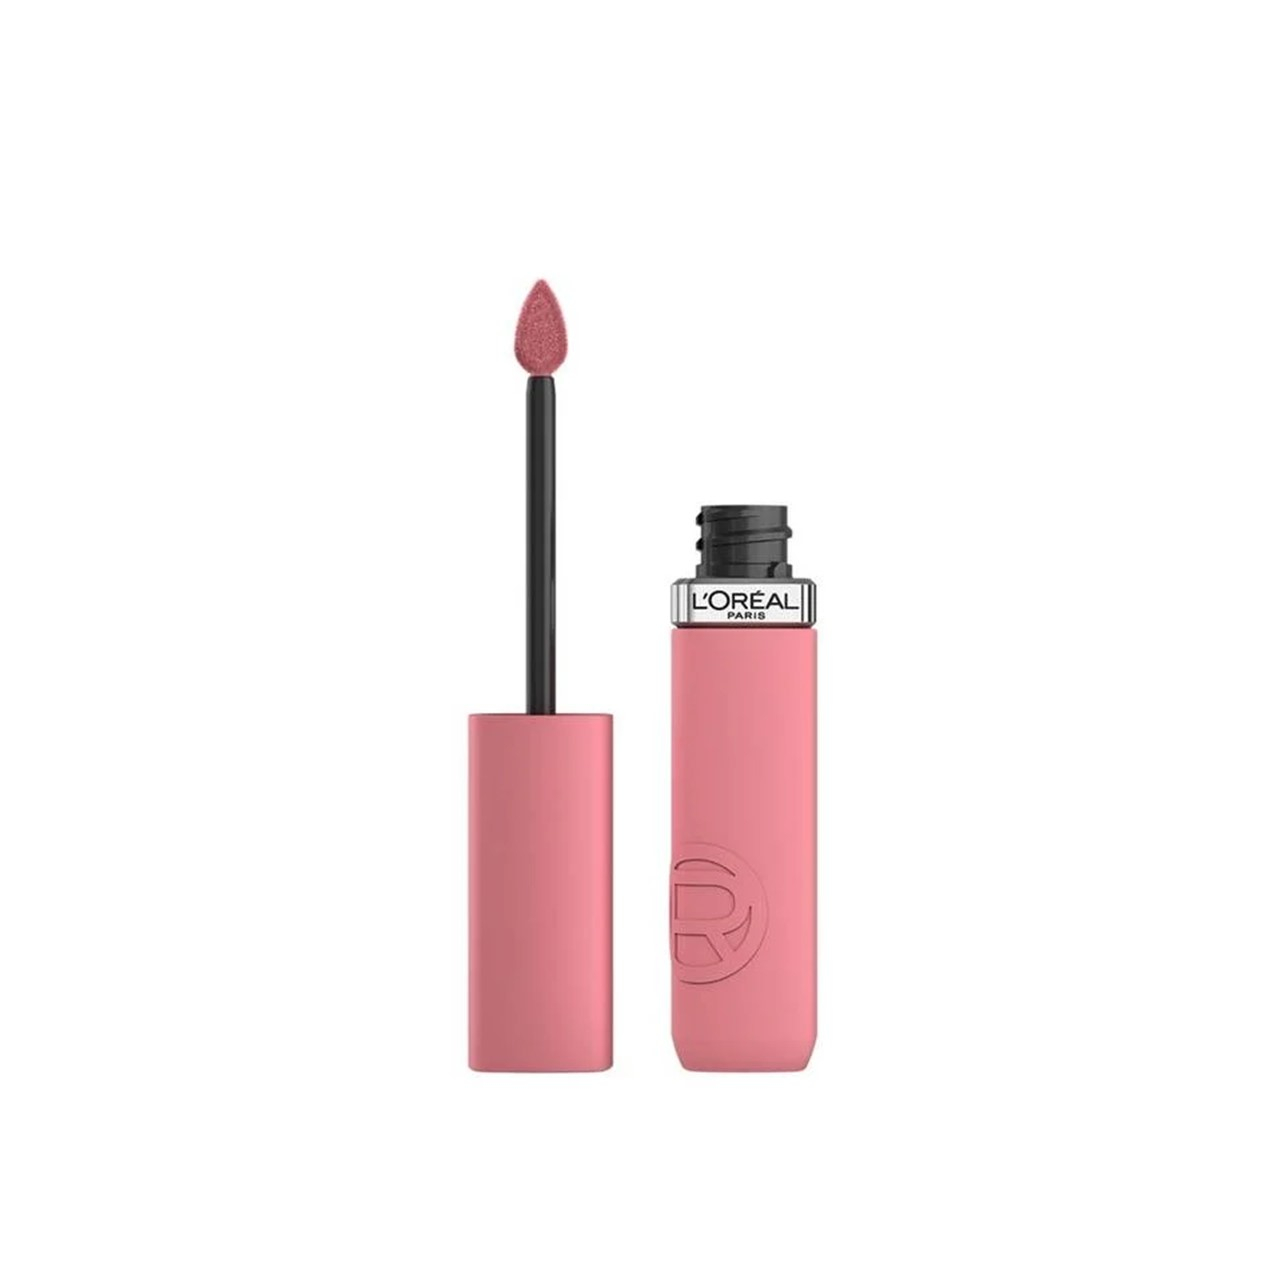 L'Oréal Paris Infallible Matte Resistance Liquid Lipstick 200 Lipstick & Chill 5ml (0.17 fl oz)